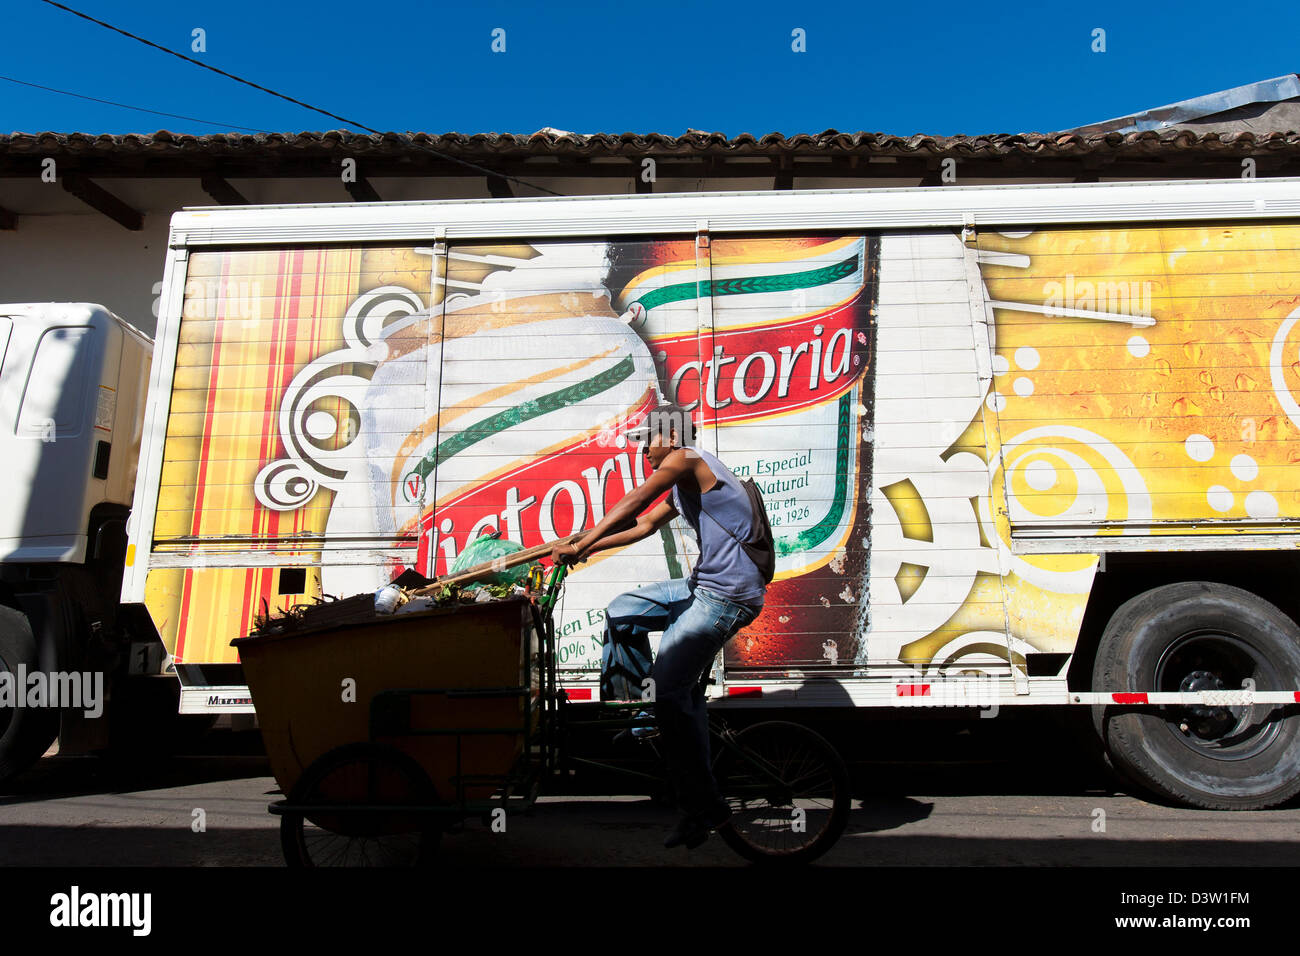 Un homme cours des cycles des camions de livraison de bière à Grenade avec des autocollants et logos pour la bière Victoria, un populaire cerveza au Nicaragua Banque D'Images